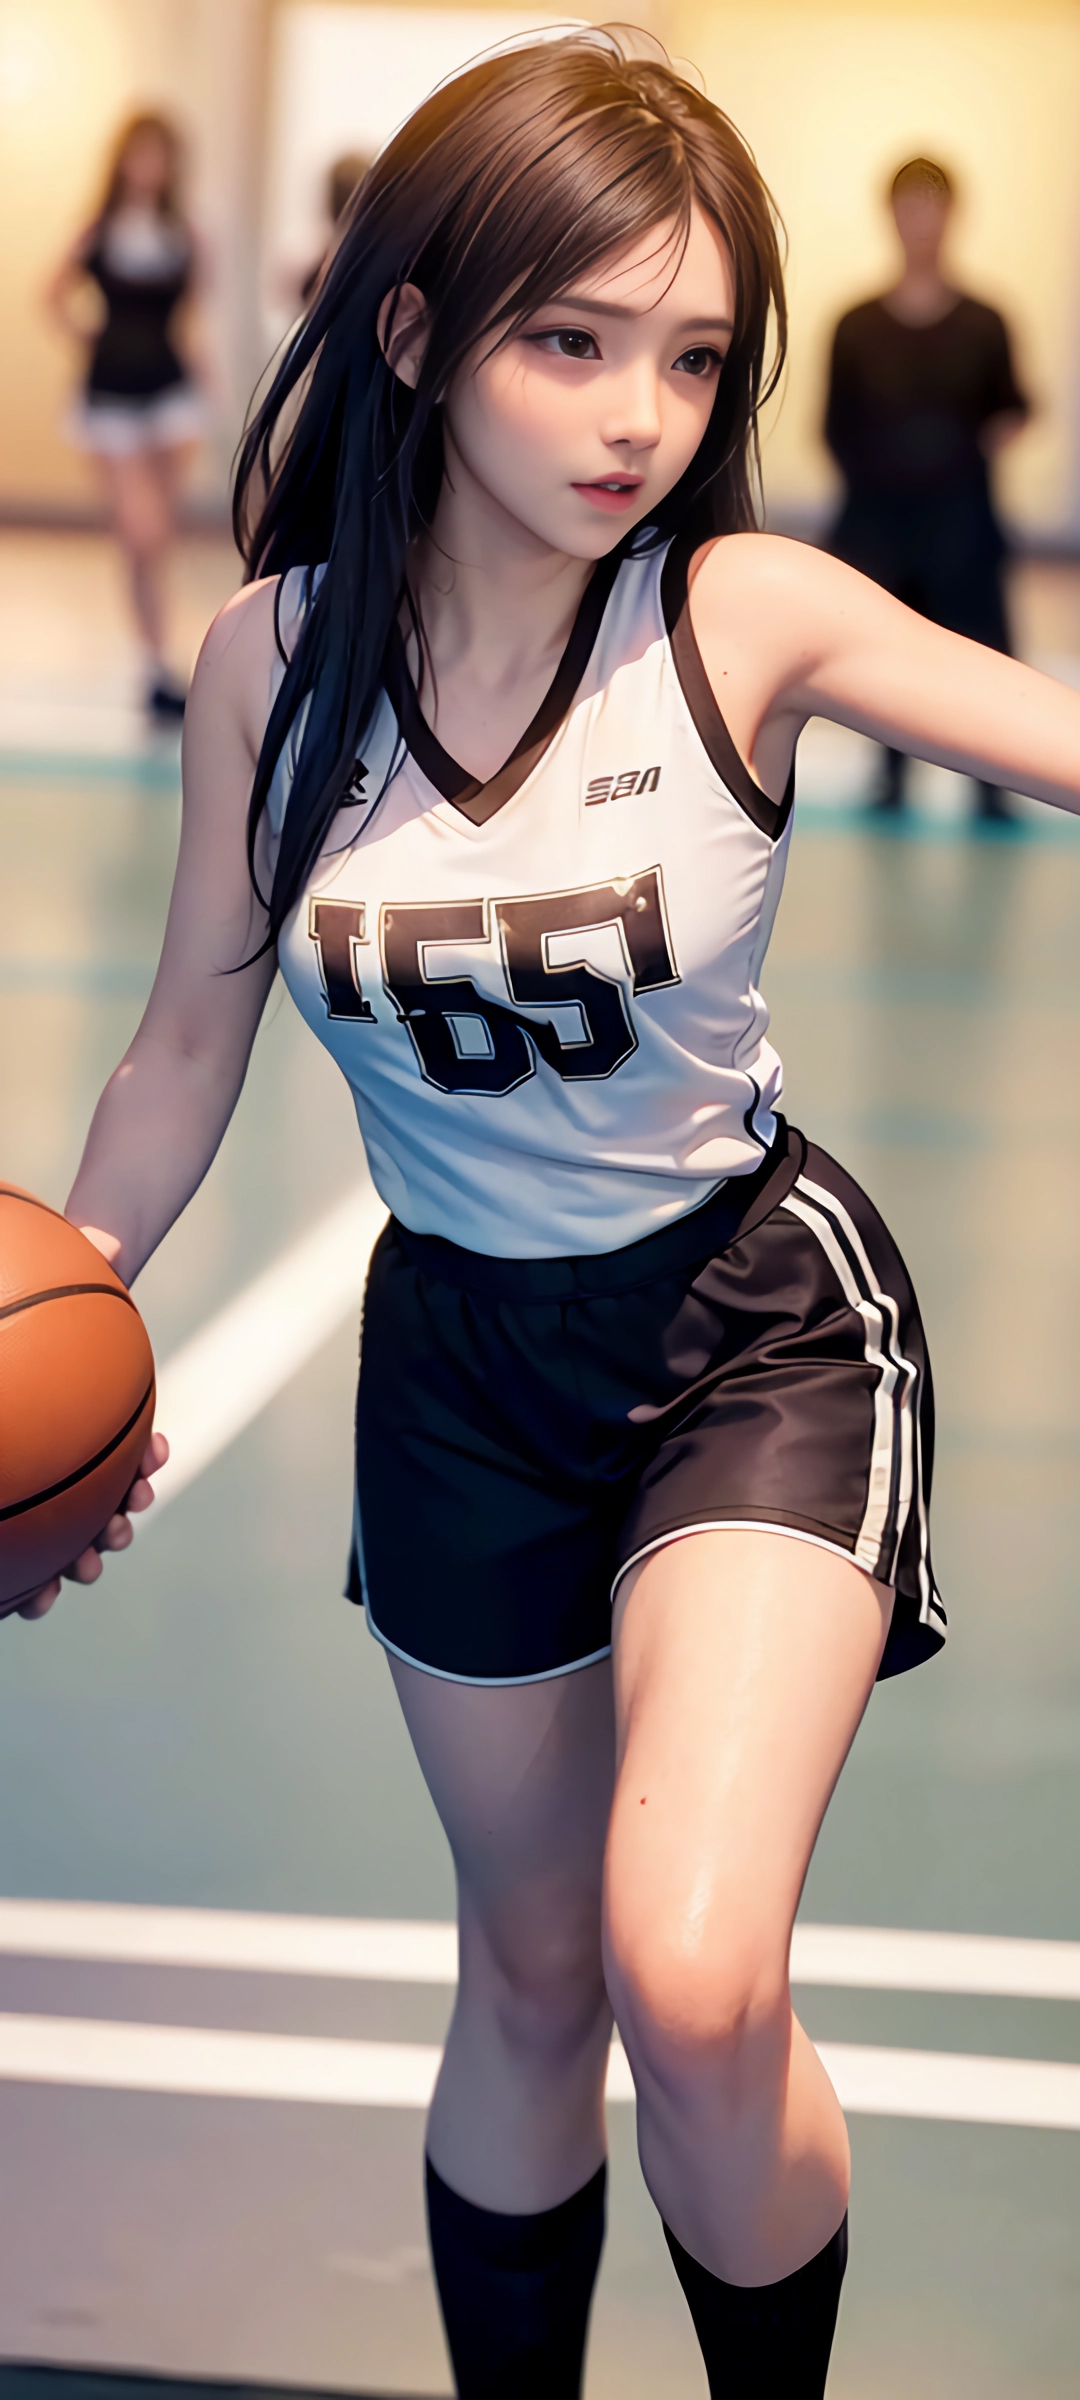 运动装 篮球 美女动漫手机壁纸